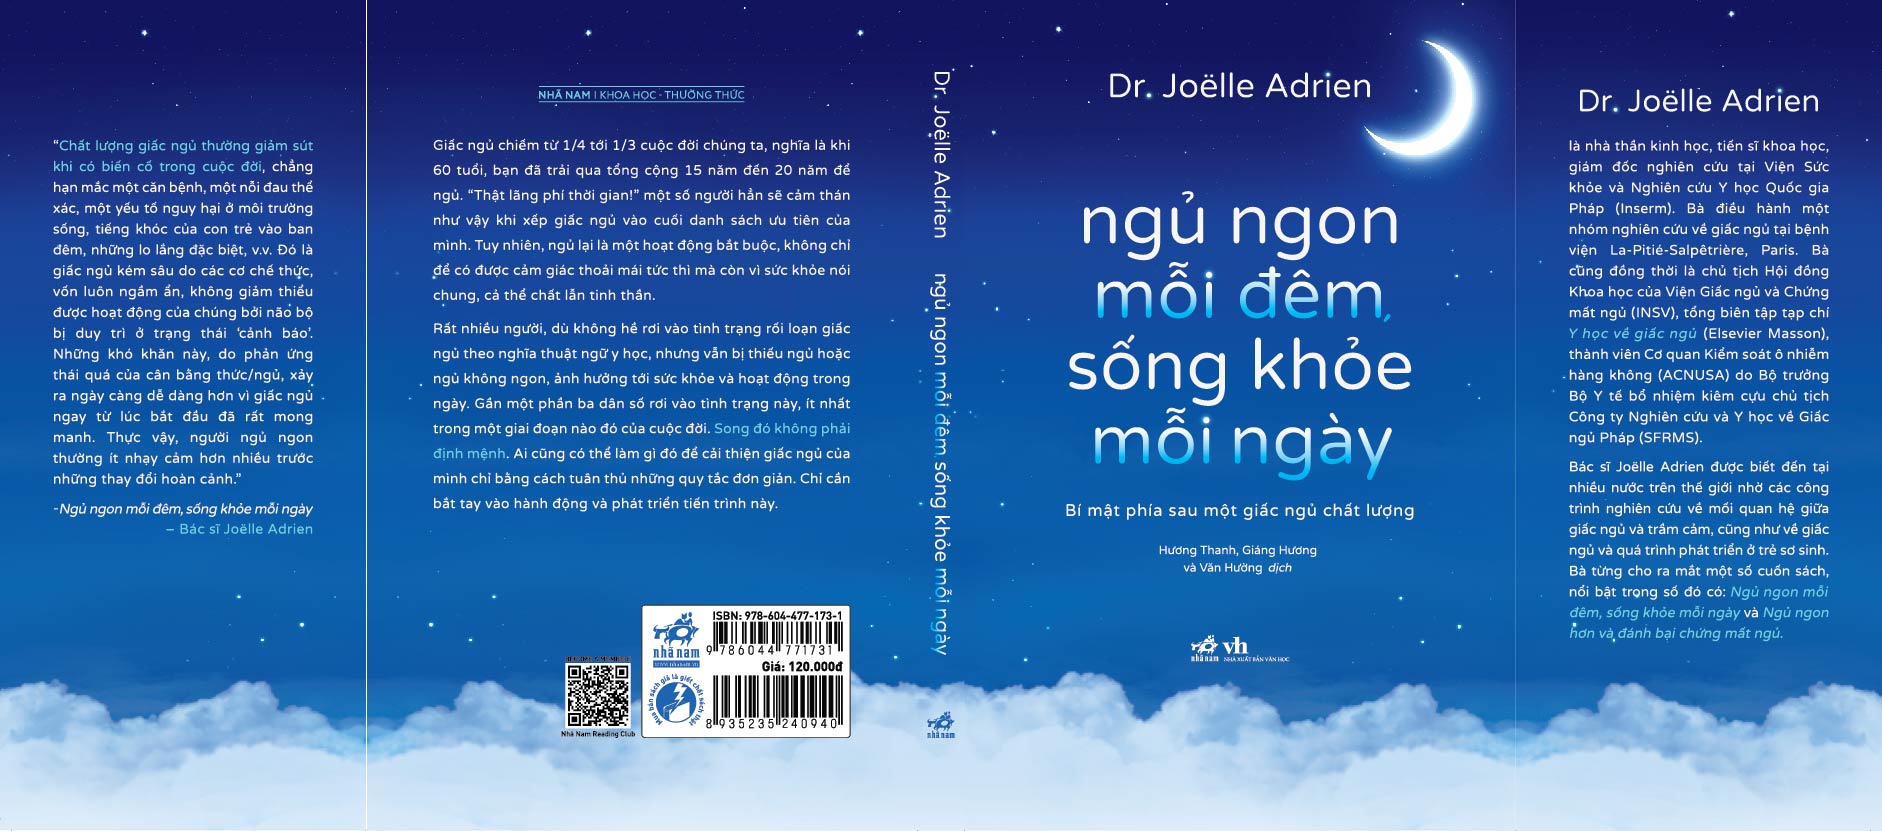 Sách - Ngủ ngon mỗi đêm, sống khỏe mỗi ngày (Dr. Joëlle Adrien) (Nhã Nam Official)